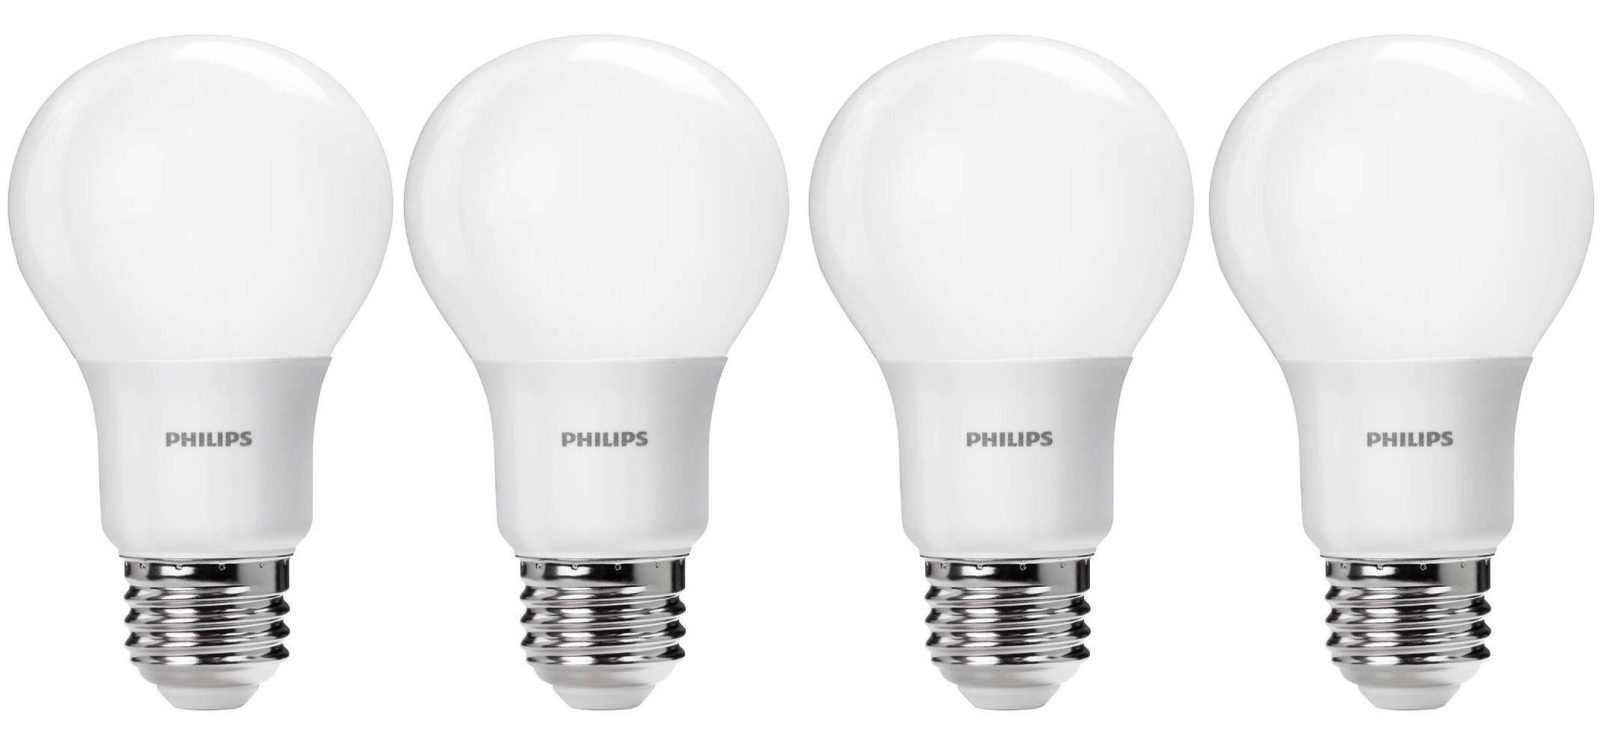 Green Deals: Philips 60W A19 Daylight LED Bulbs $8 (Reg. $15+), more | Electrek